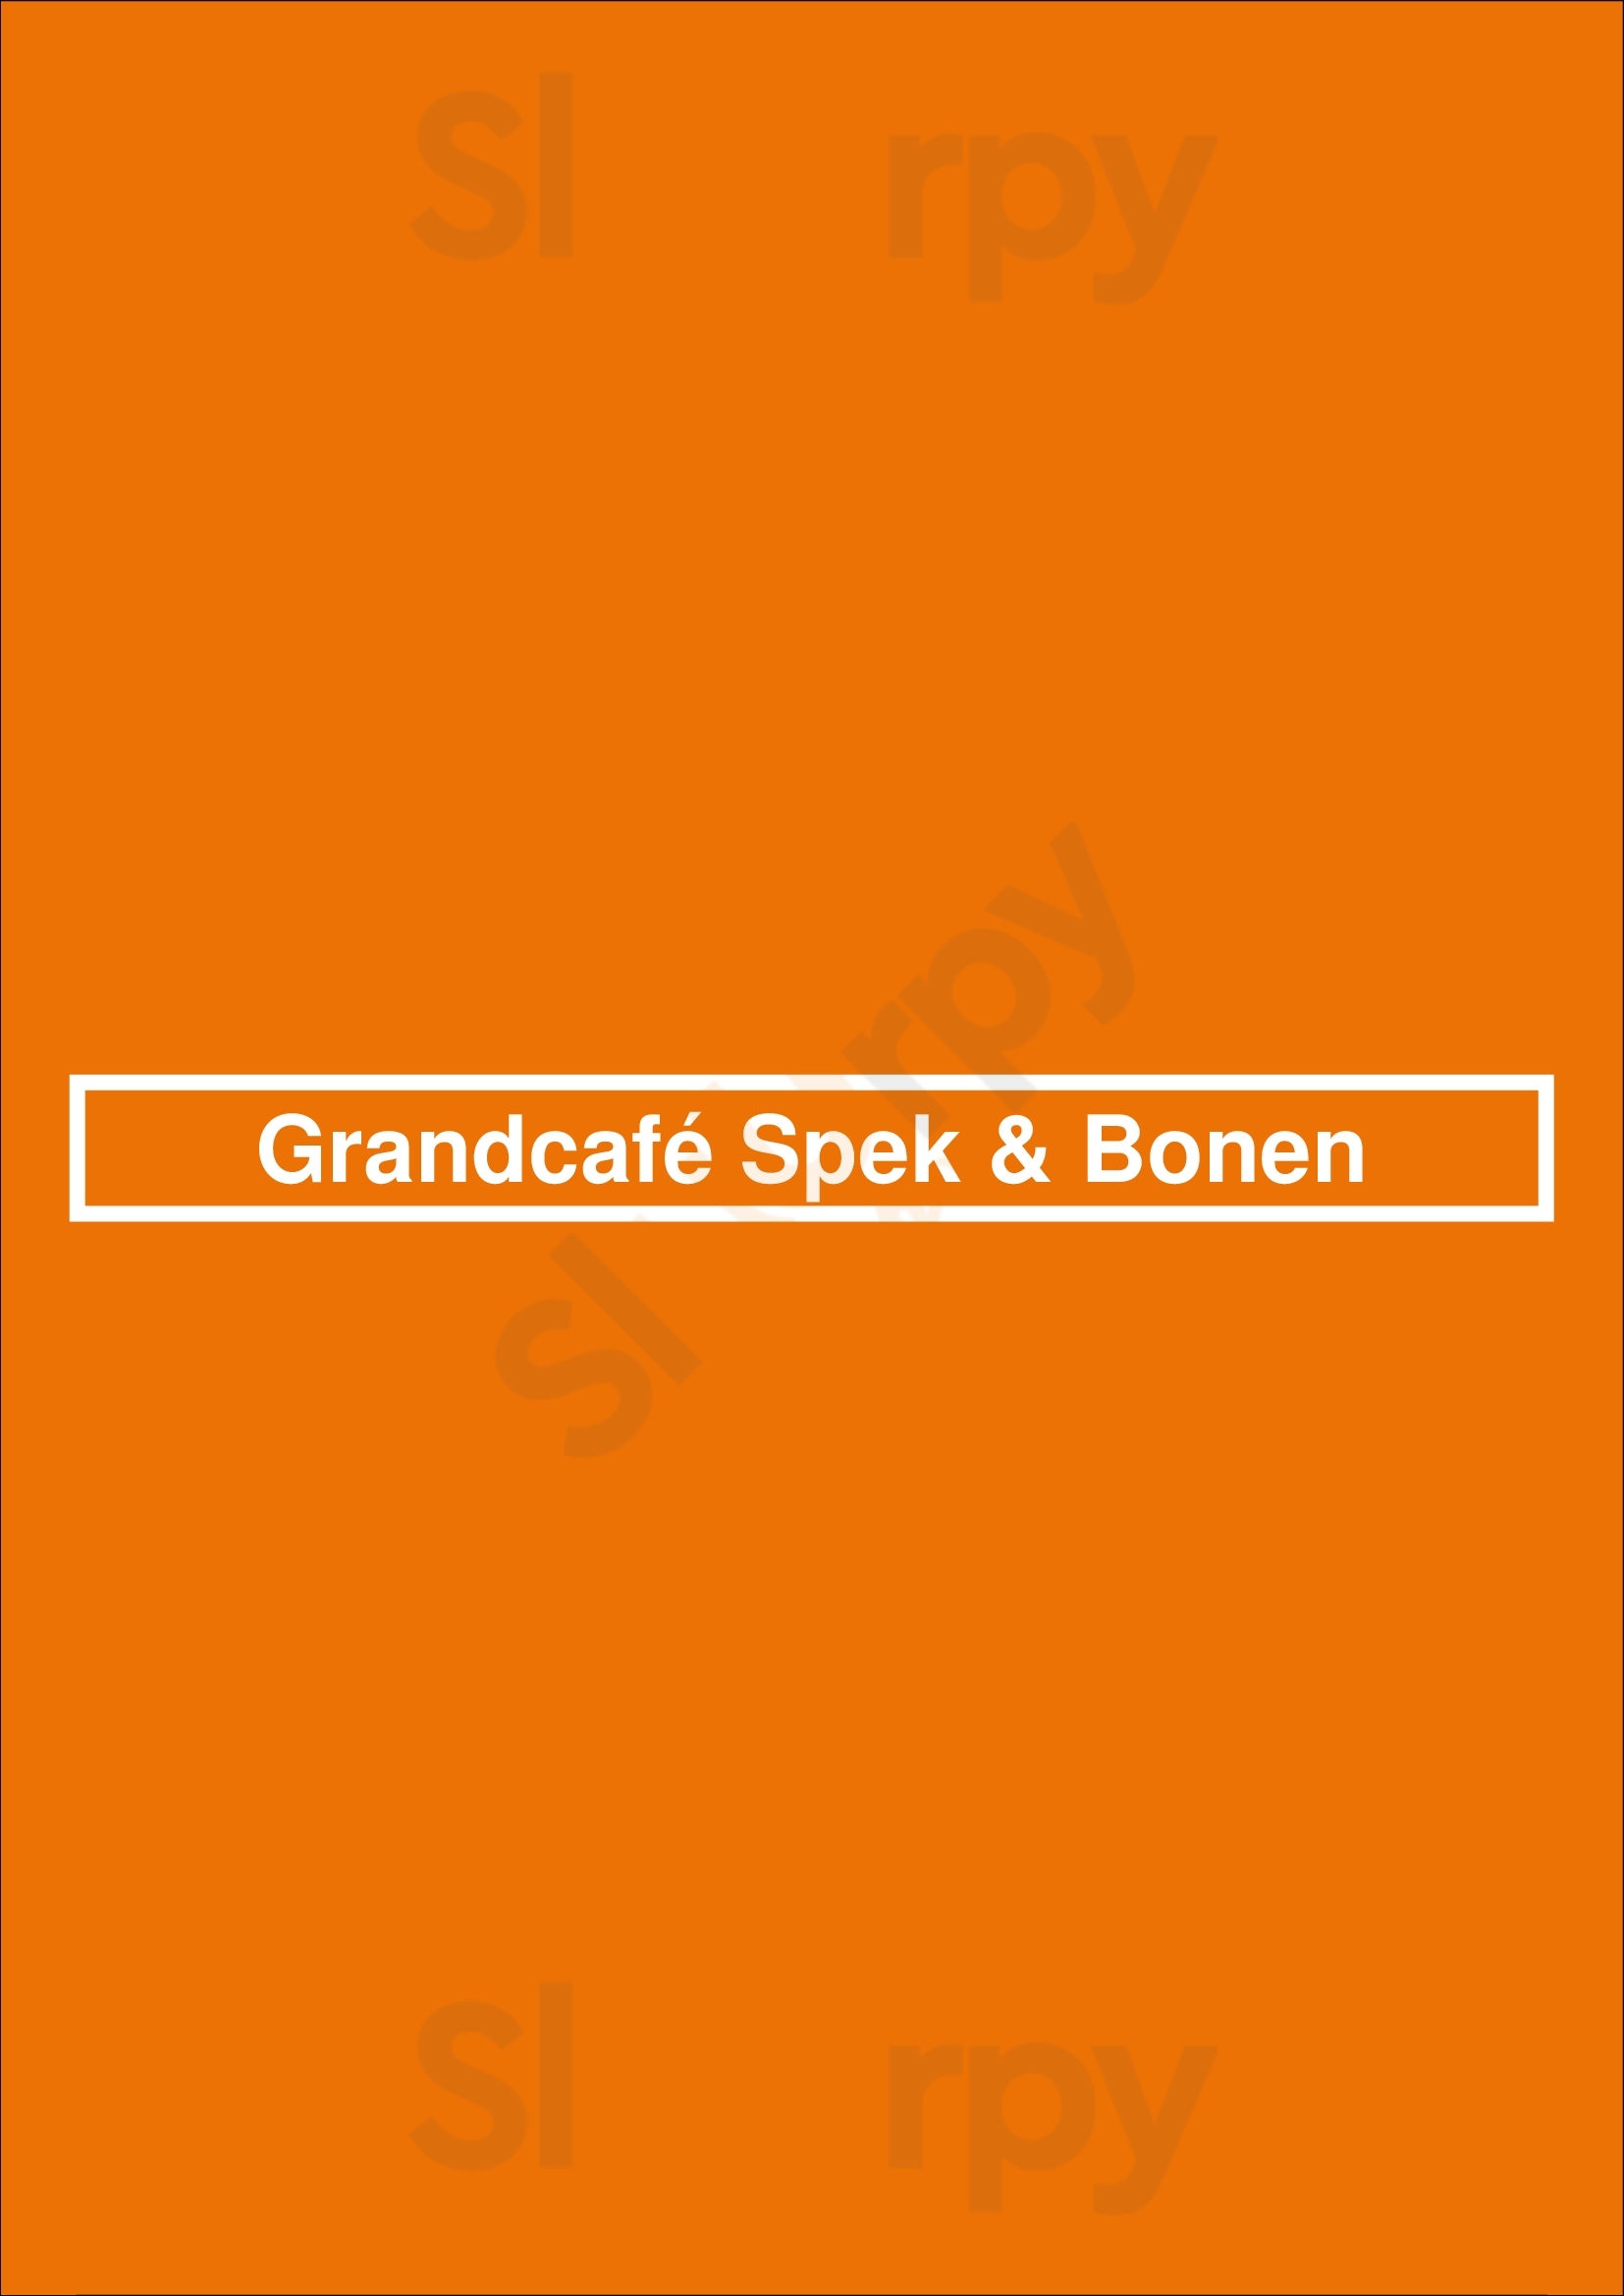 Grandcafé Spek & Bonen Sliedrecht Menu - 1